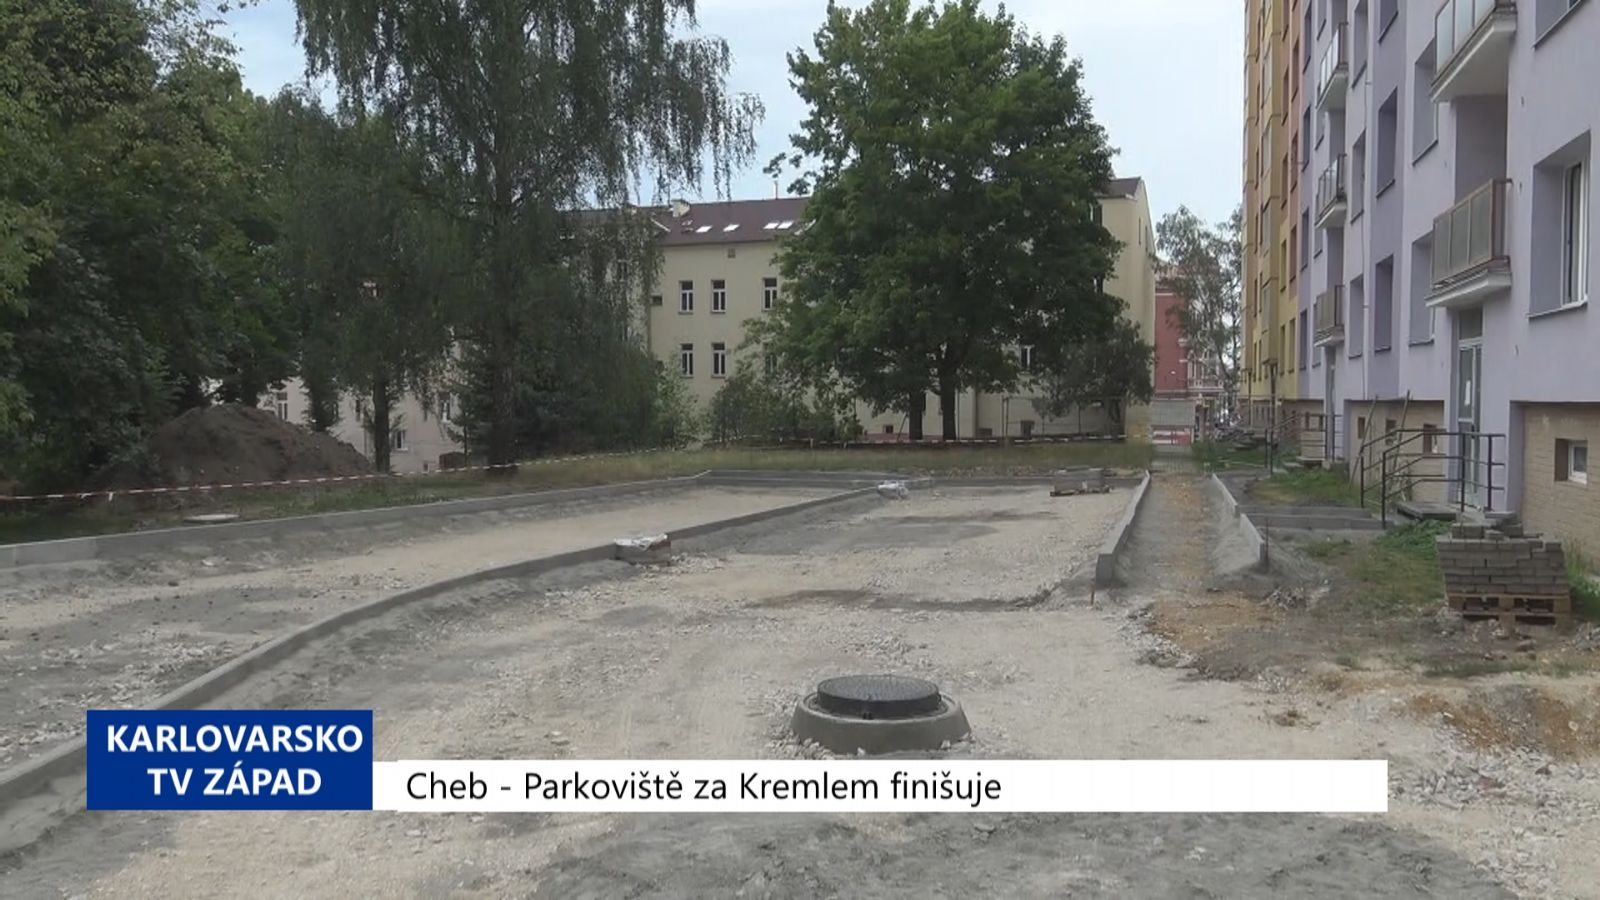 Cheb: Parkoviště za Kremlem finišuje (TV Západ)